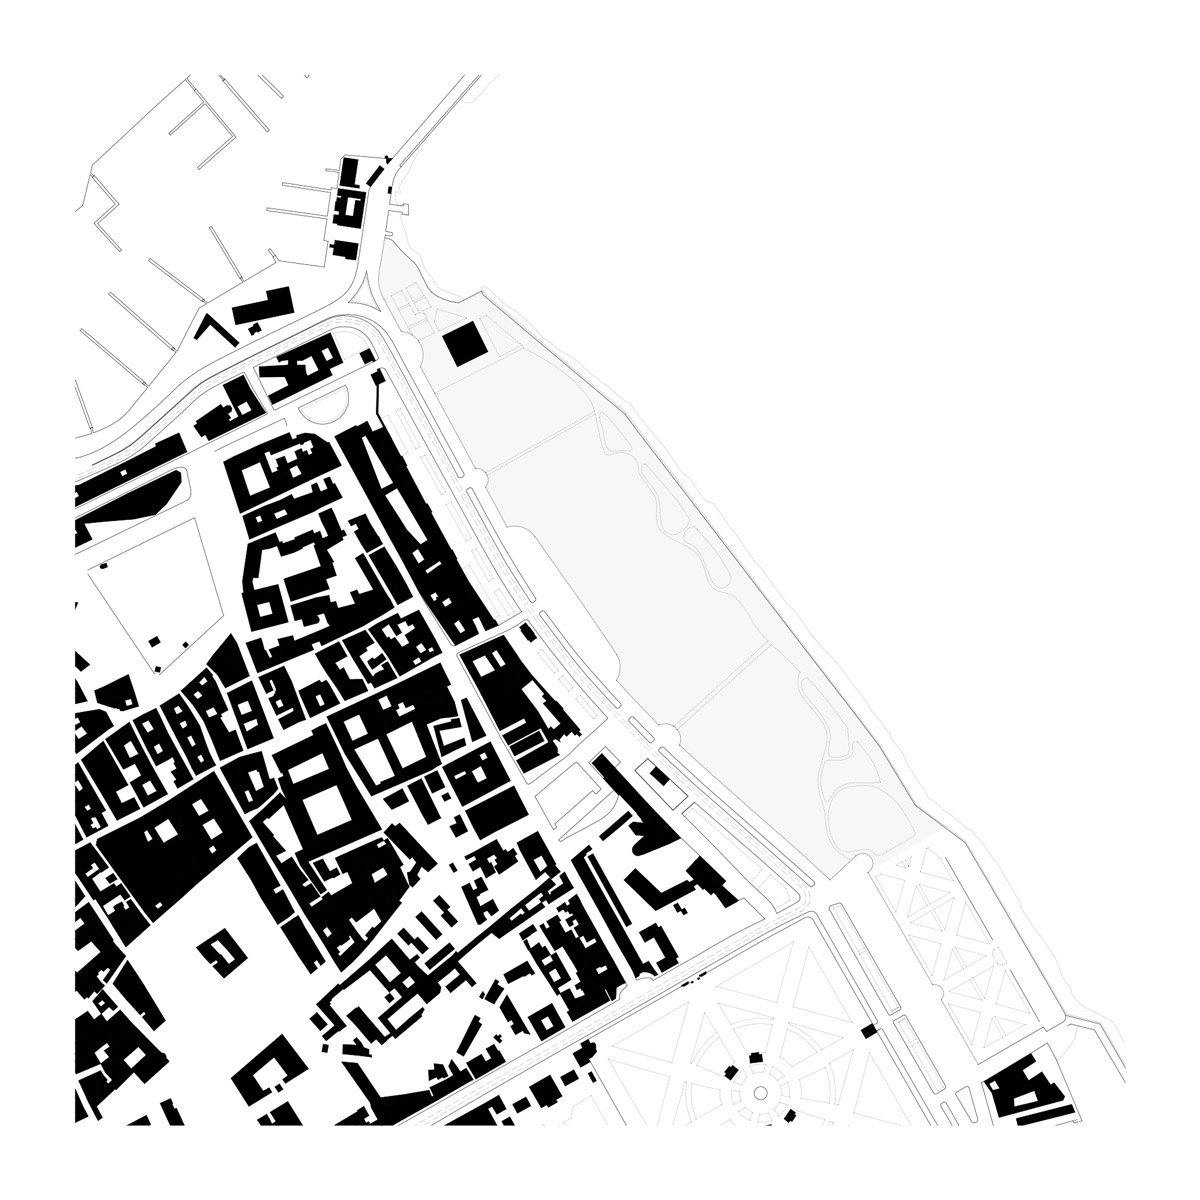 04-proposed-siteplan